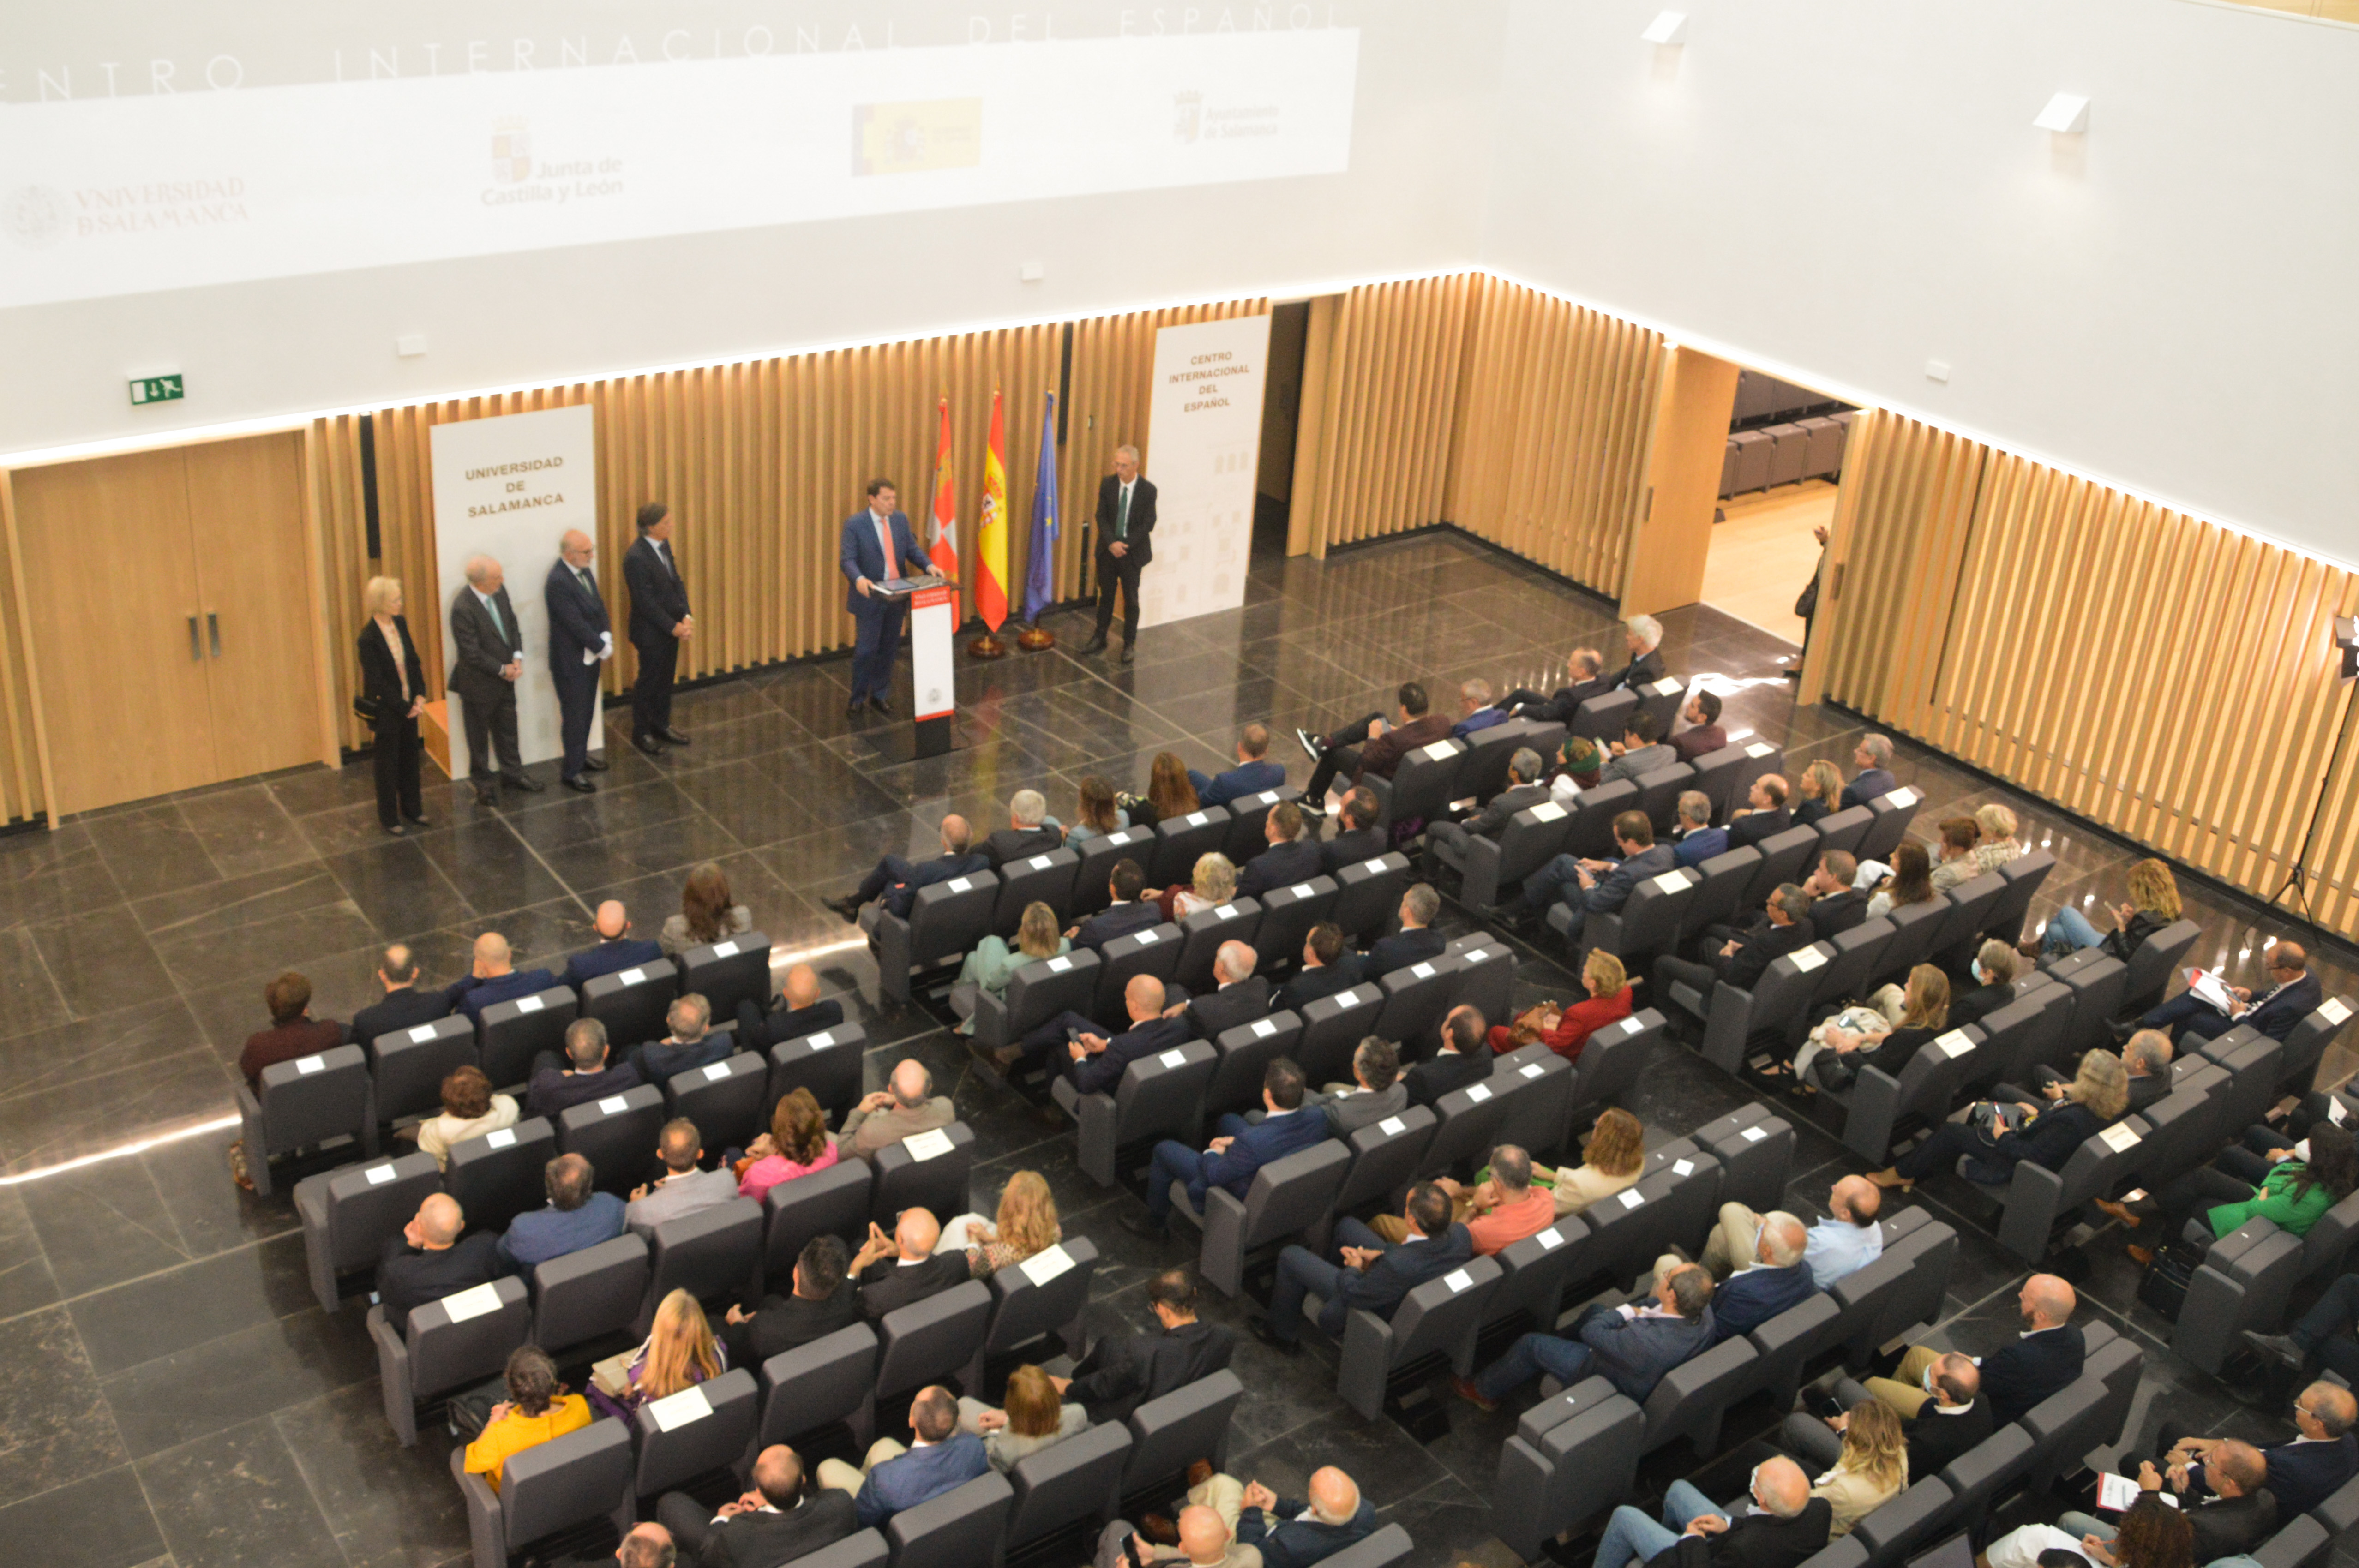 La Universidad de Salamanca inaugura el Centro Internacional del Español como referente en la investigación y divulgación del español